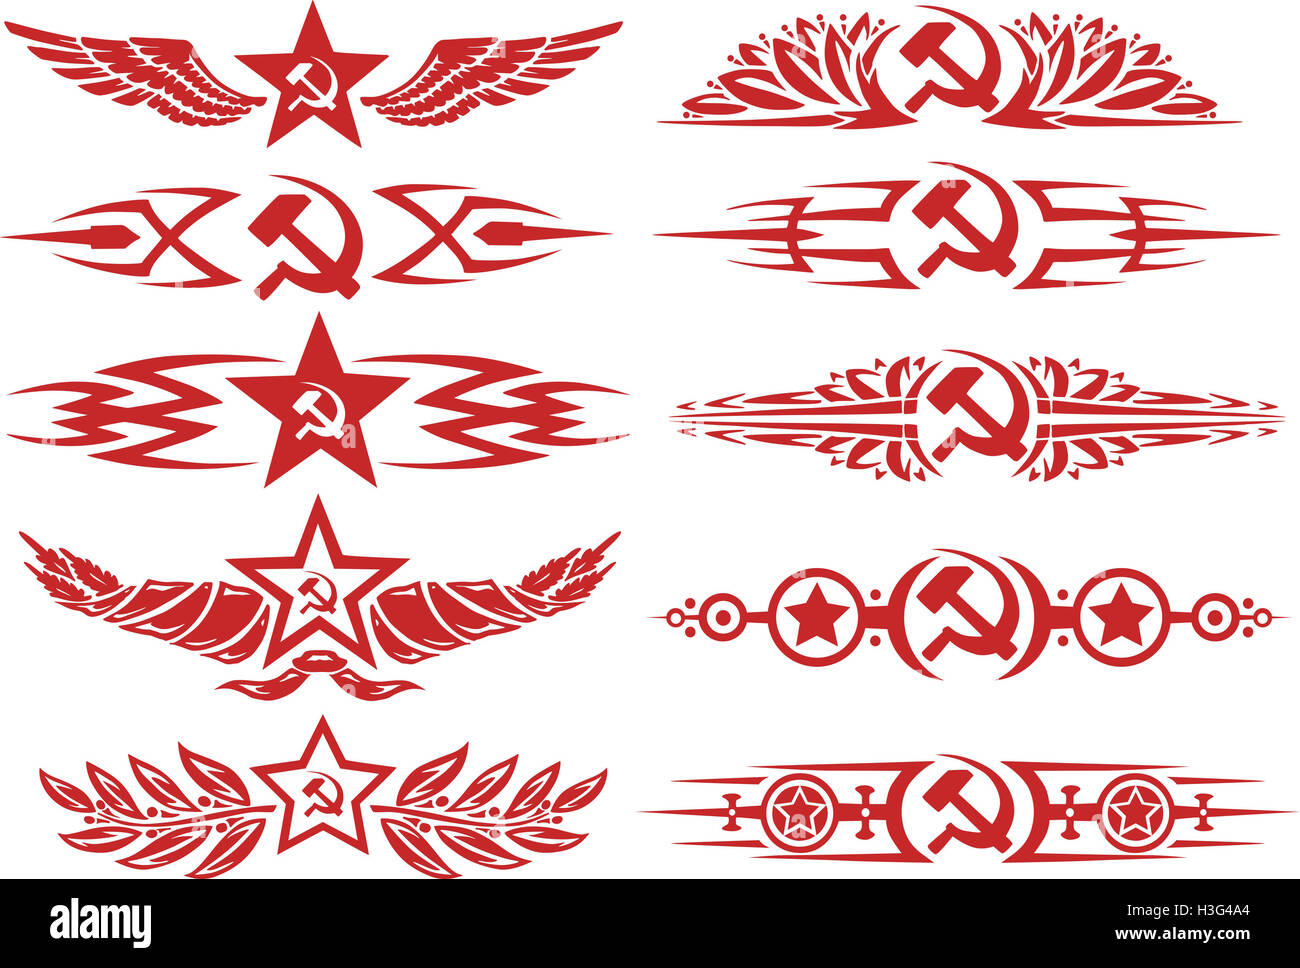 Satz von rot sowjetischen dekorativen typografische Vignetten und Tattoos mit Sternen, Sichel und Hammer und andere sowjetische Symbole Stockfoto